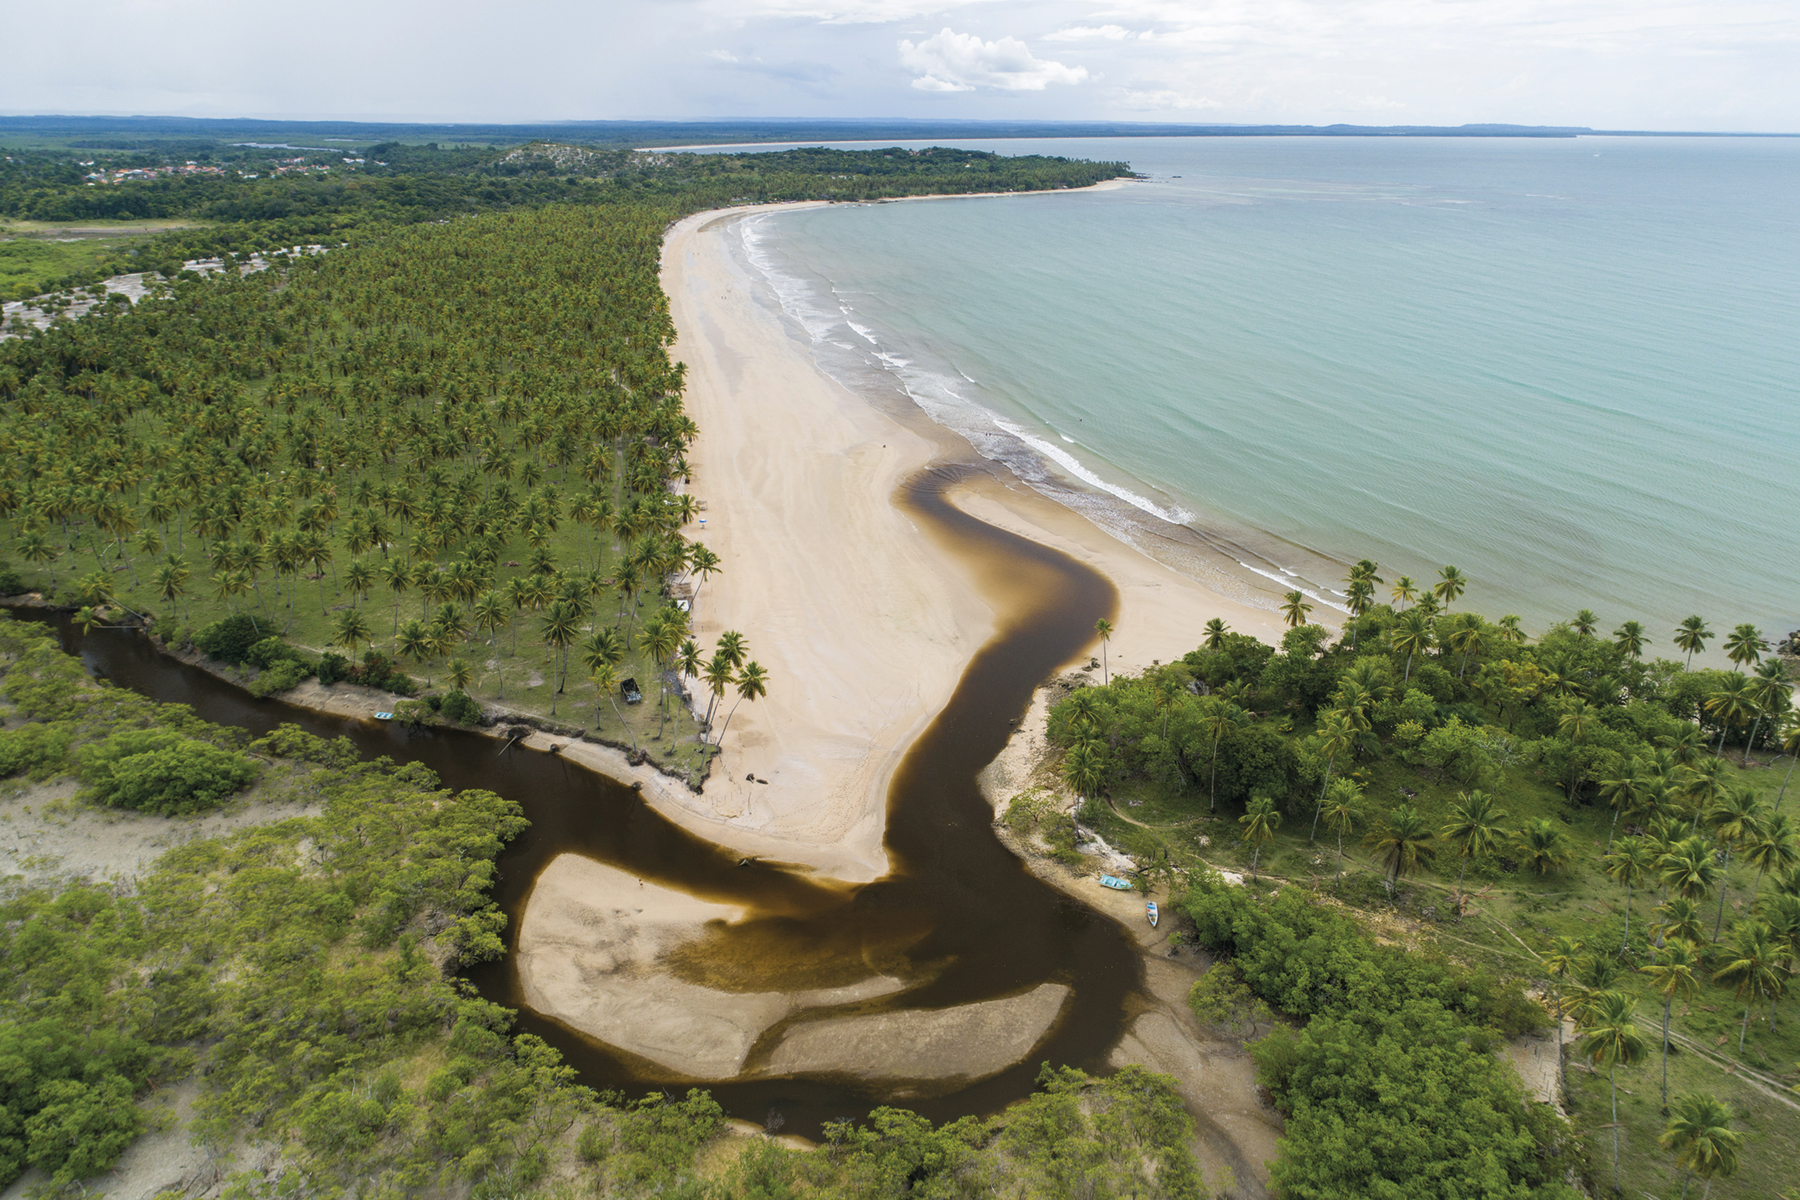 Fotografia. Vista de cima. O curso de um rio escuro desaguando em uma praia com muita vegetação e uma extensa faixa de areia.